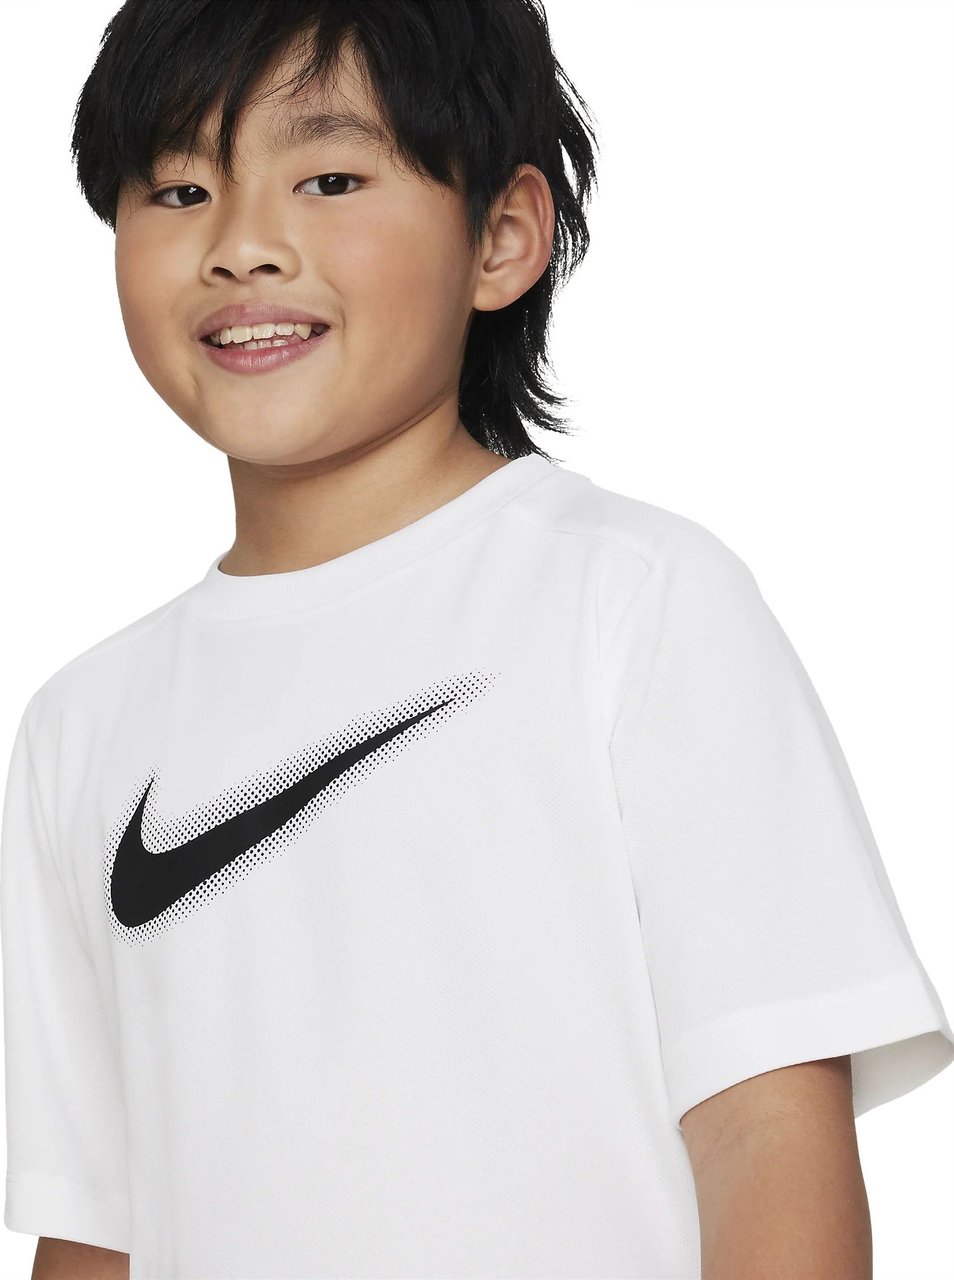 Nike Dri-Fit T-Shirt Kids Wit Wit